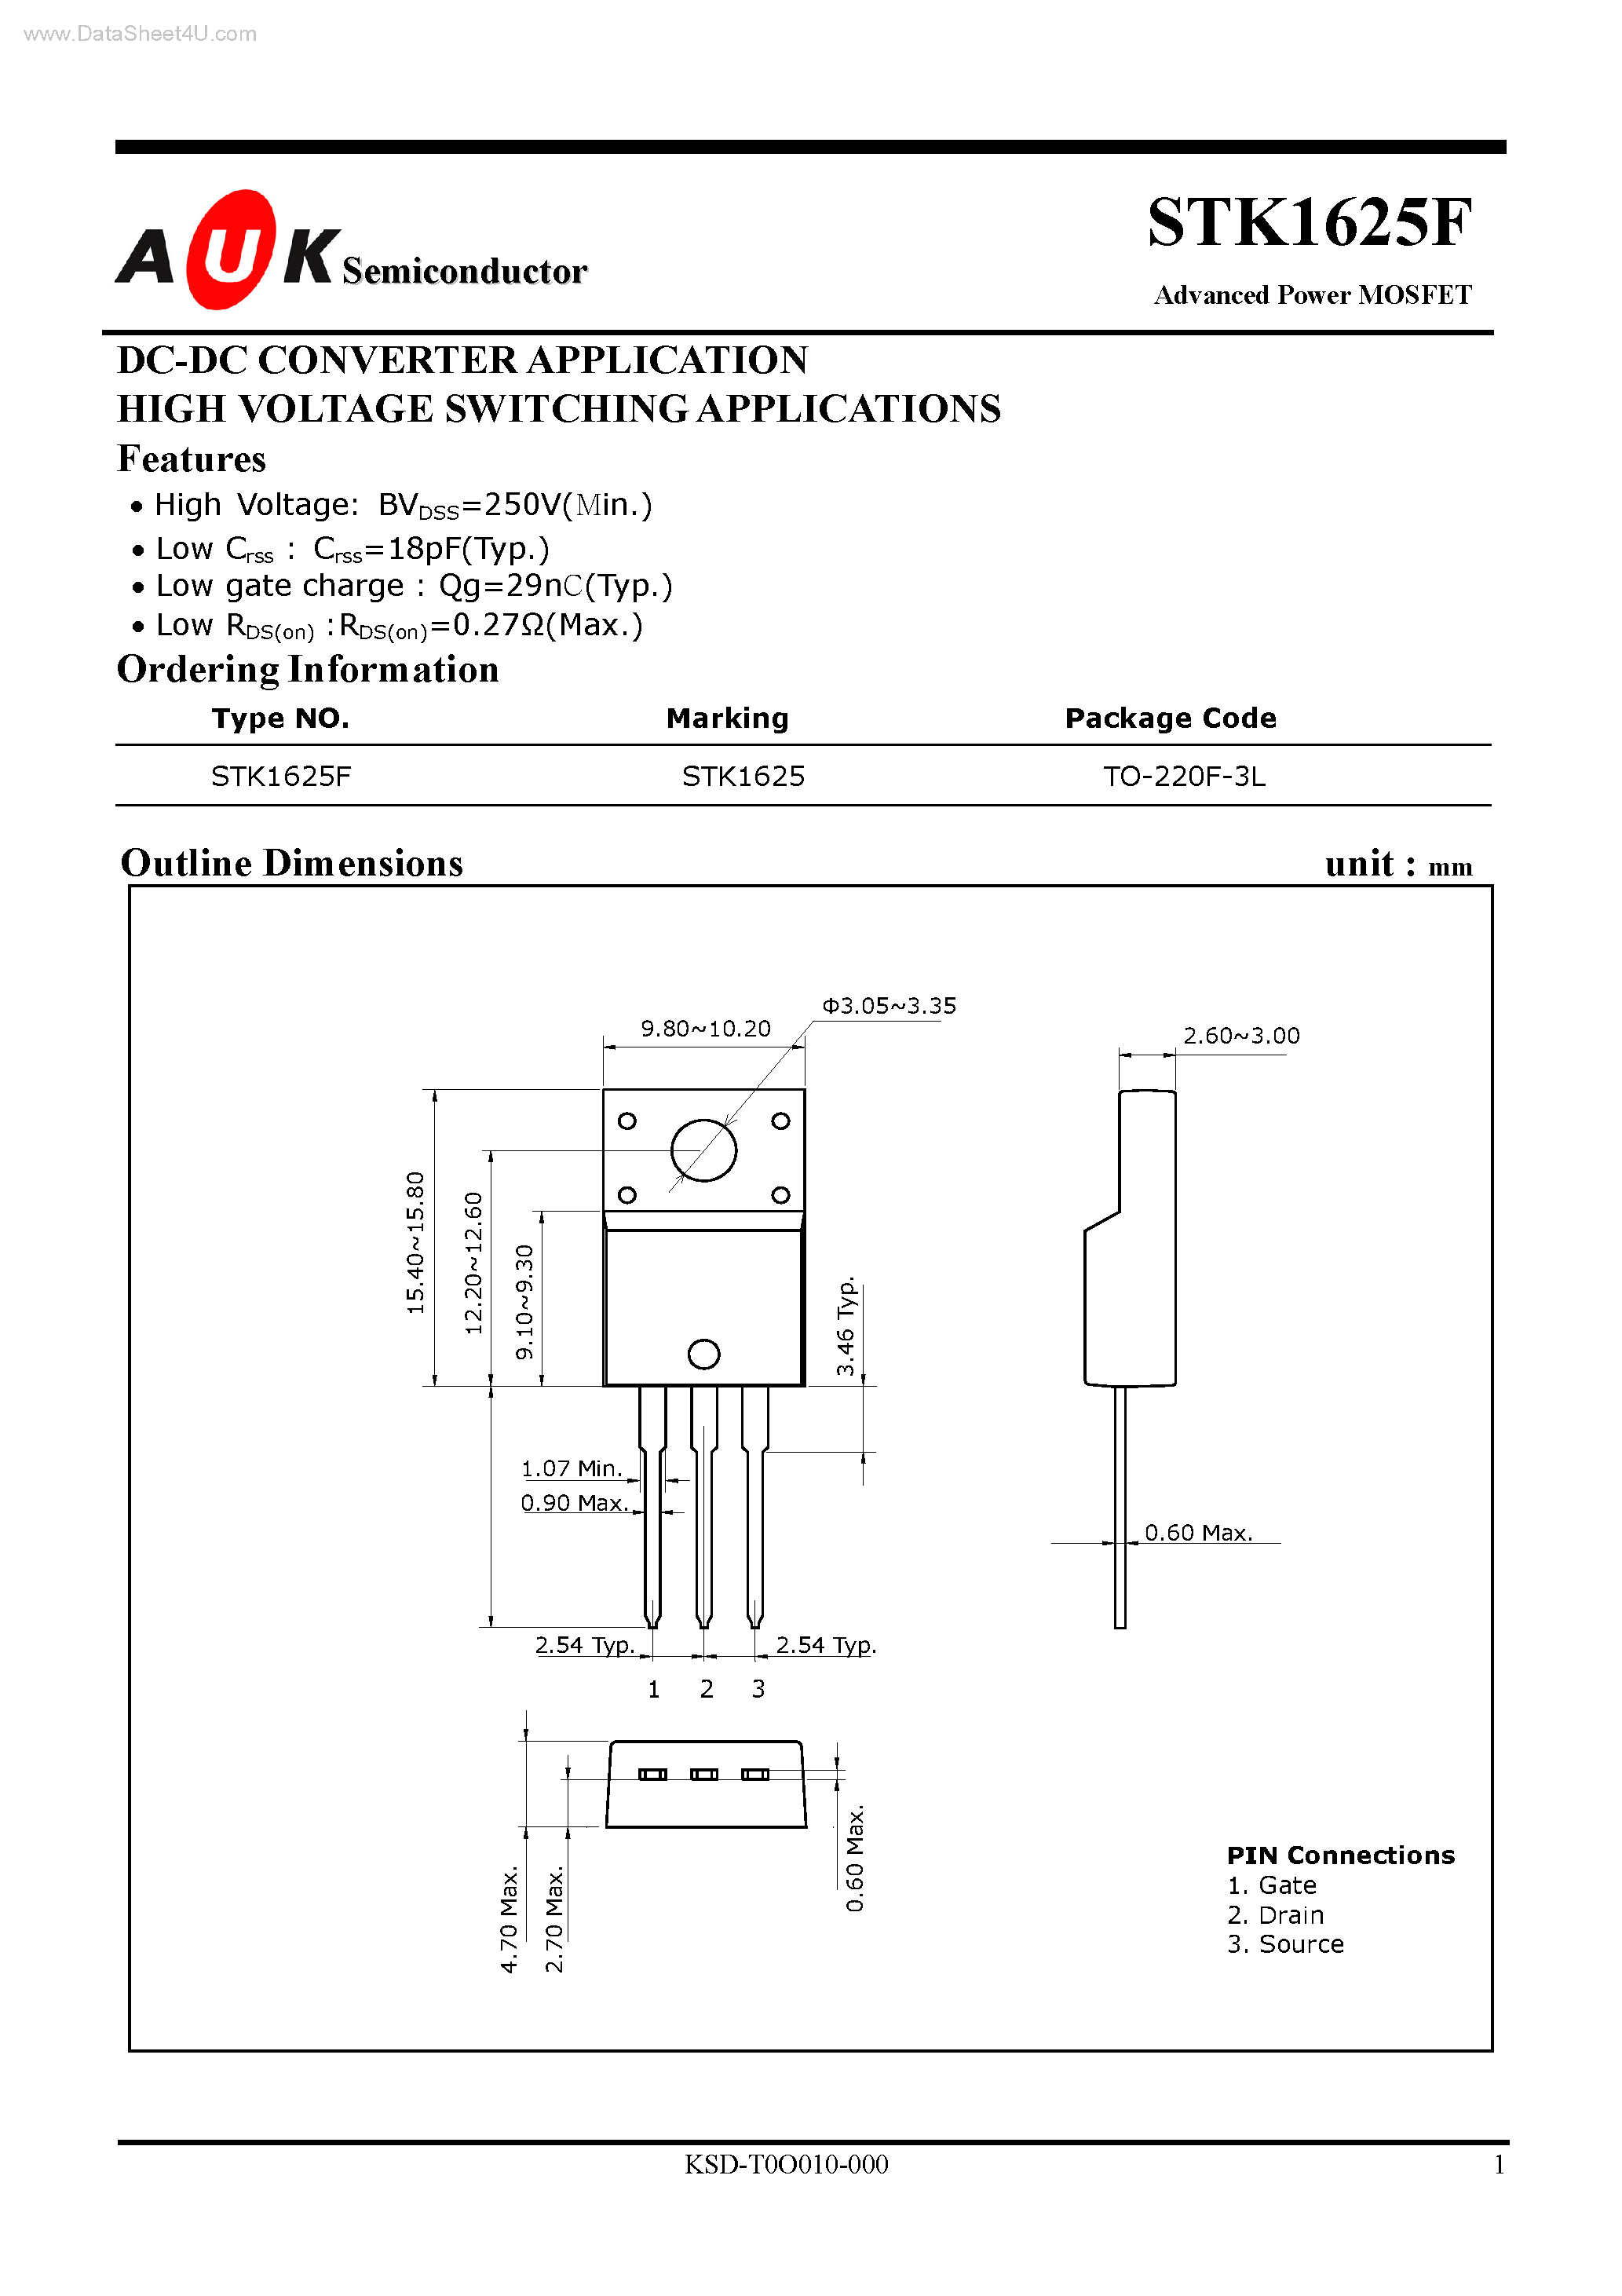 Даташит STK1625F - Advanced Power MOSFET страница 1